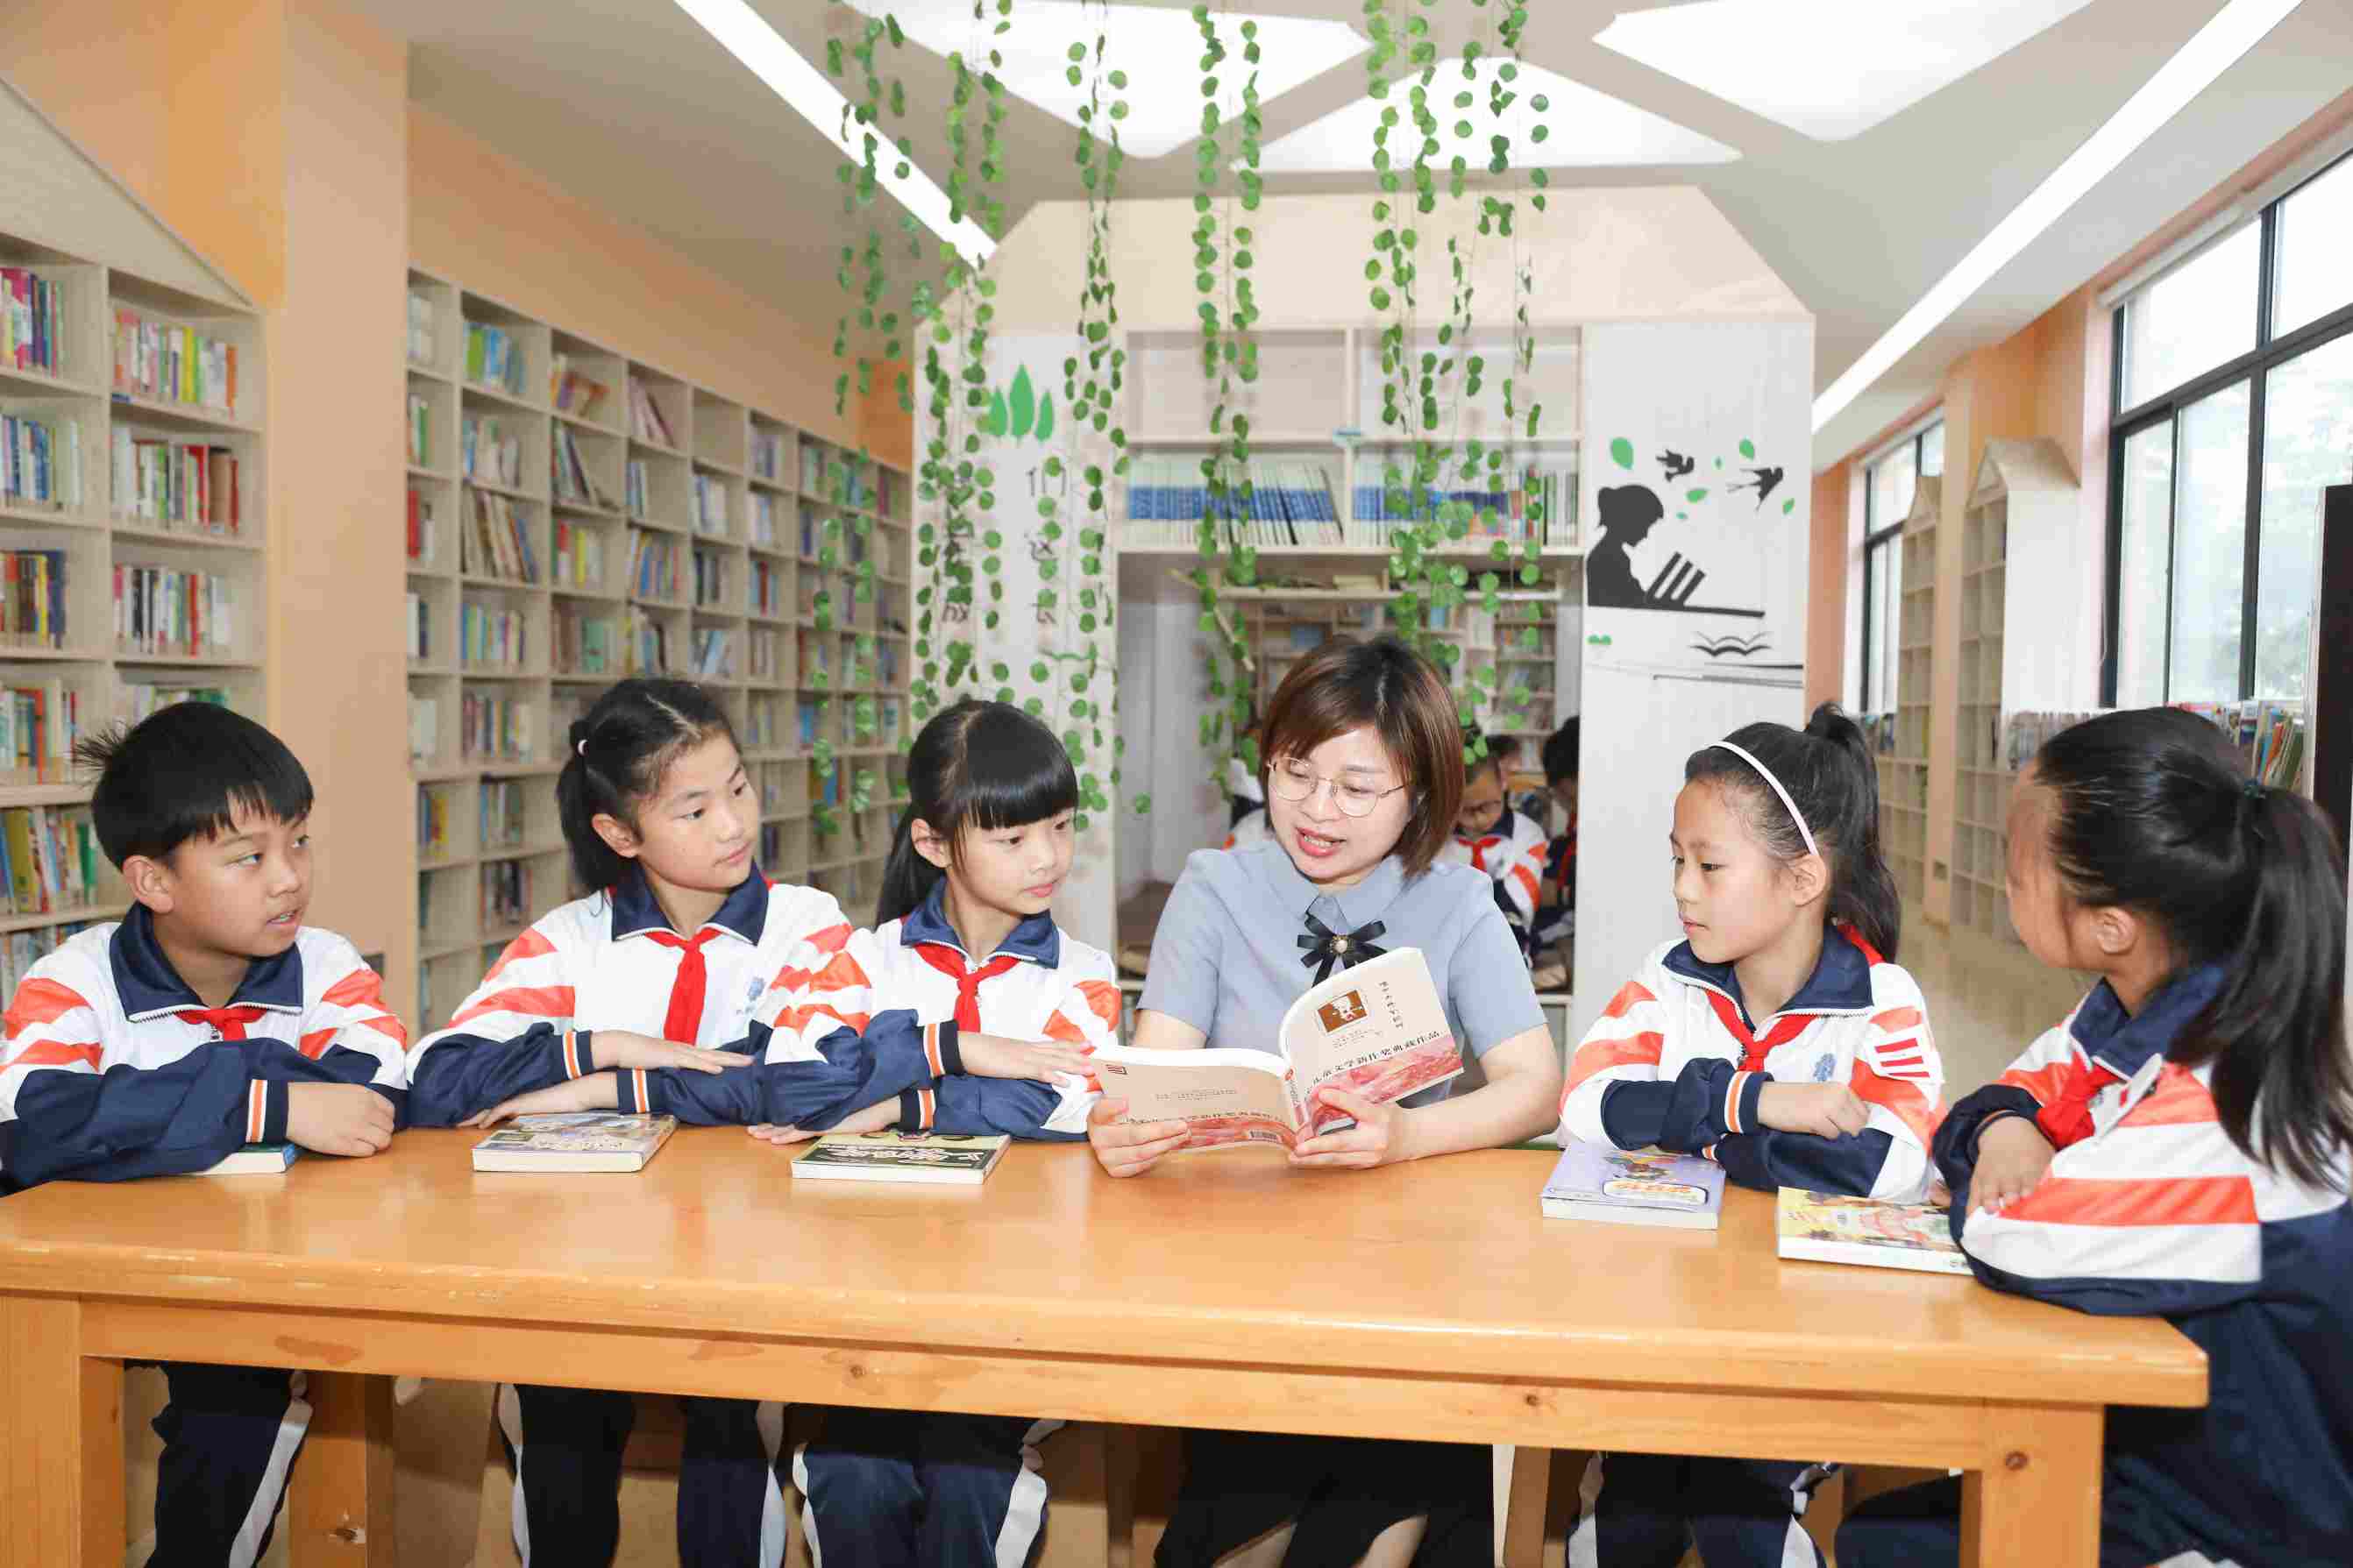 仰天湖中建小学老师与学生一起在图书馆共读一本书。仰天湖中建小学供图